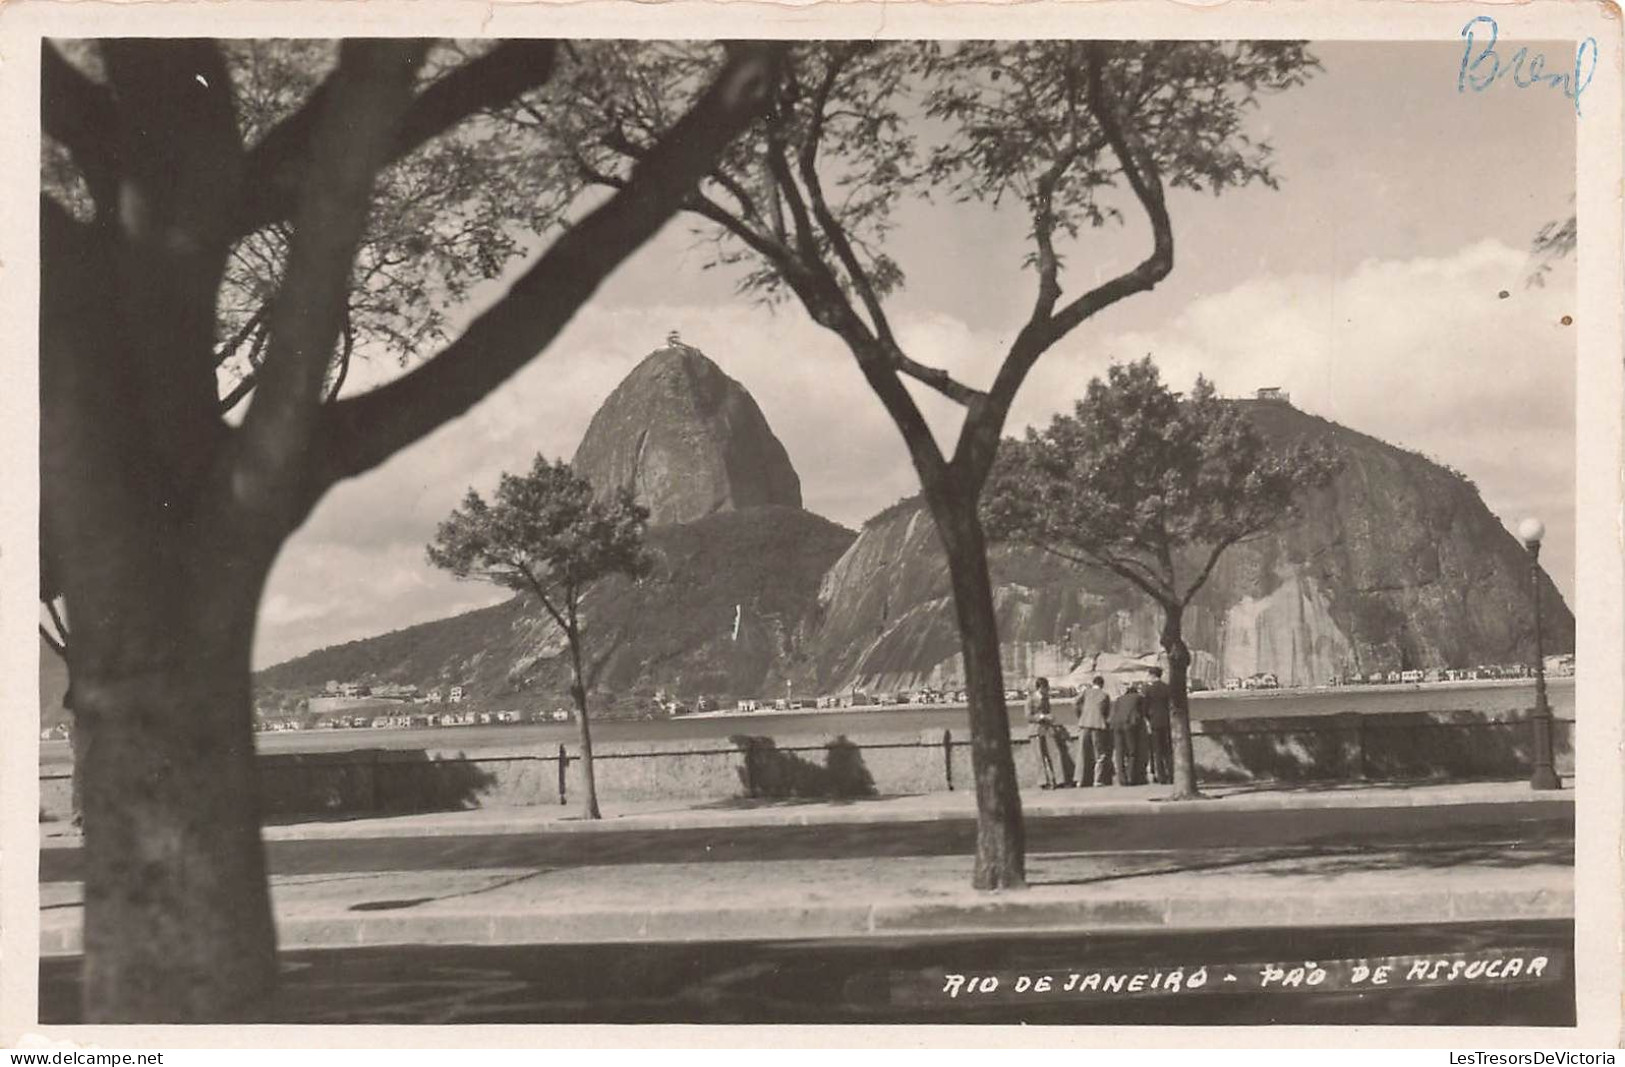 BRÉSIL - Rio De Janeiro - Pao De Assucar - Carte Postale - Rio De Janeiro